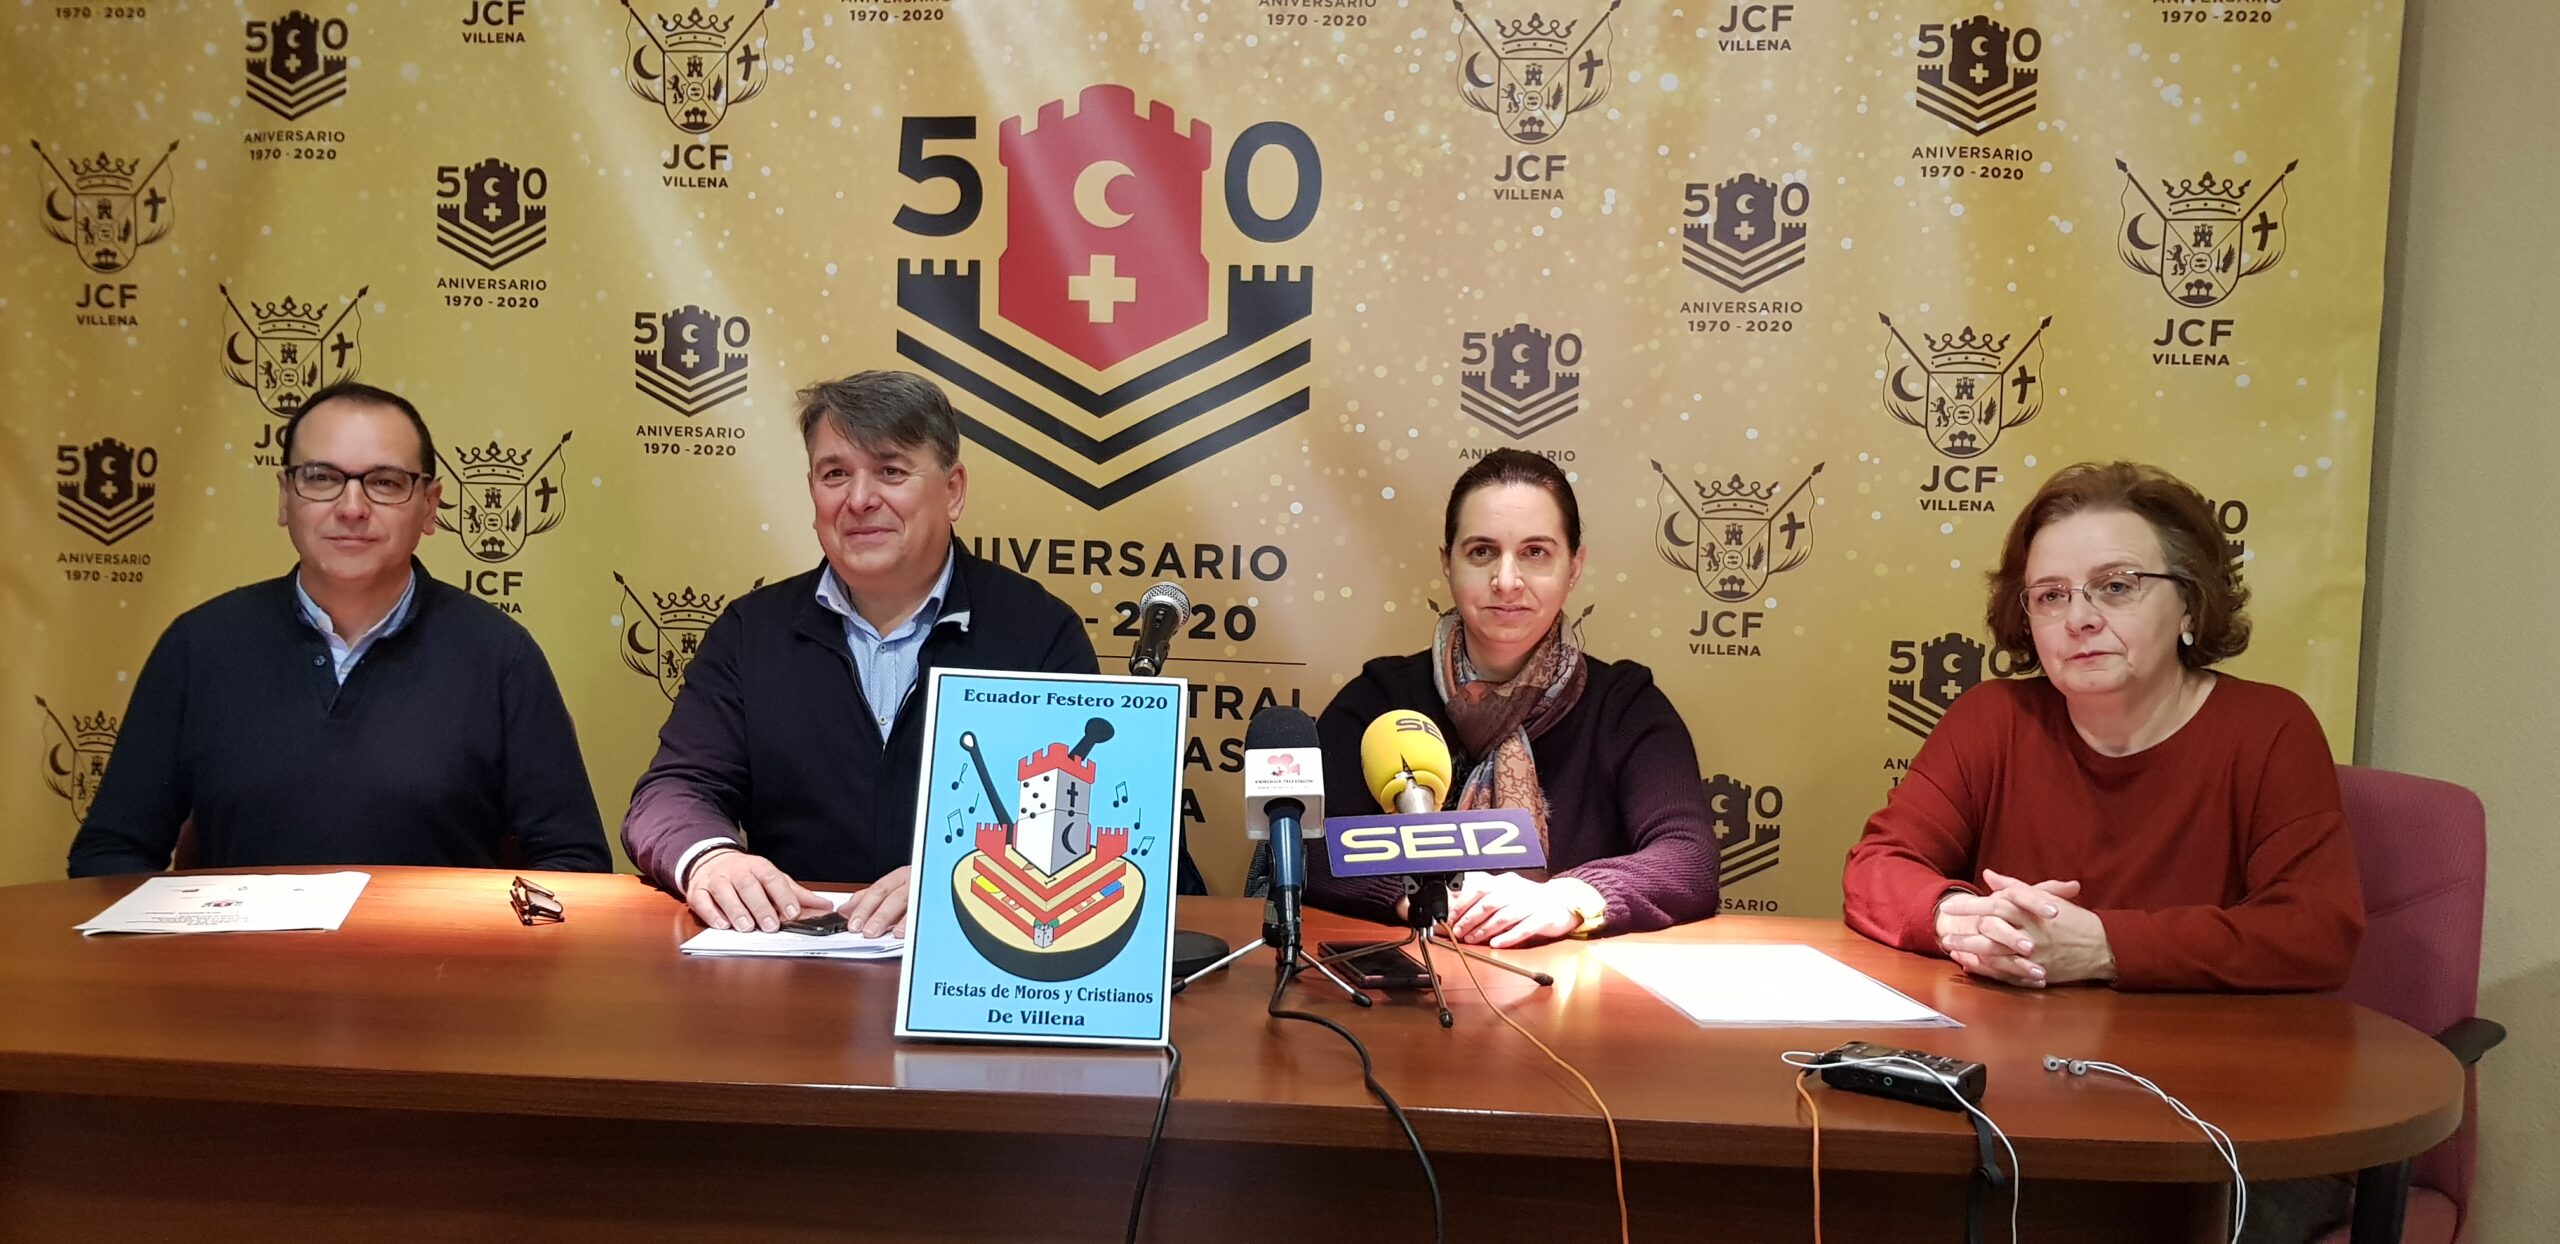 La Junta Central de Fiestas de Villena traslada a mayo el certamen de composición festera Manuel Carrascosa